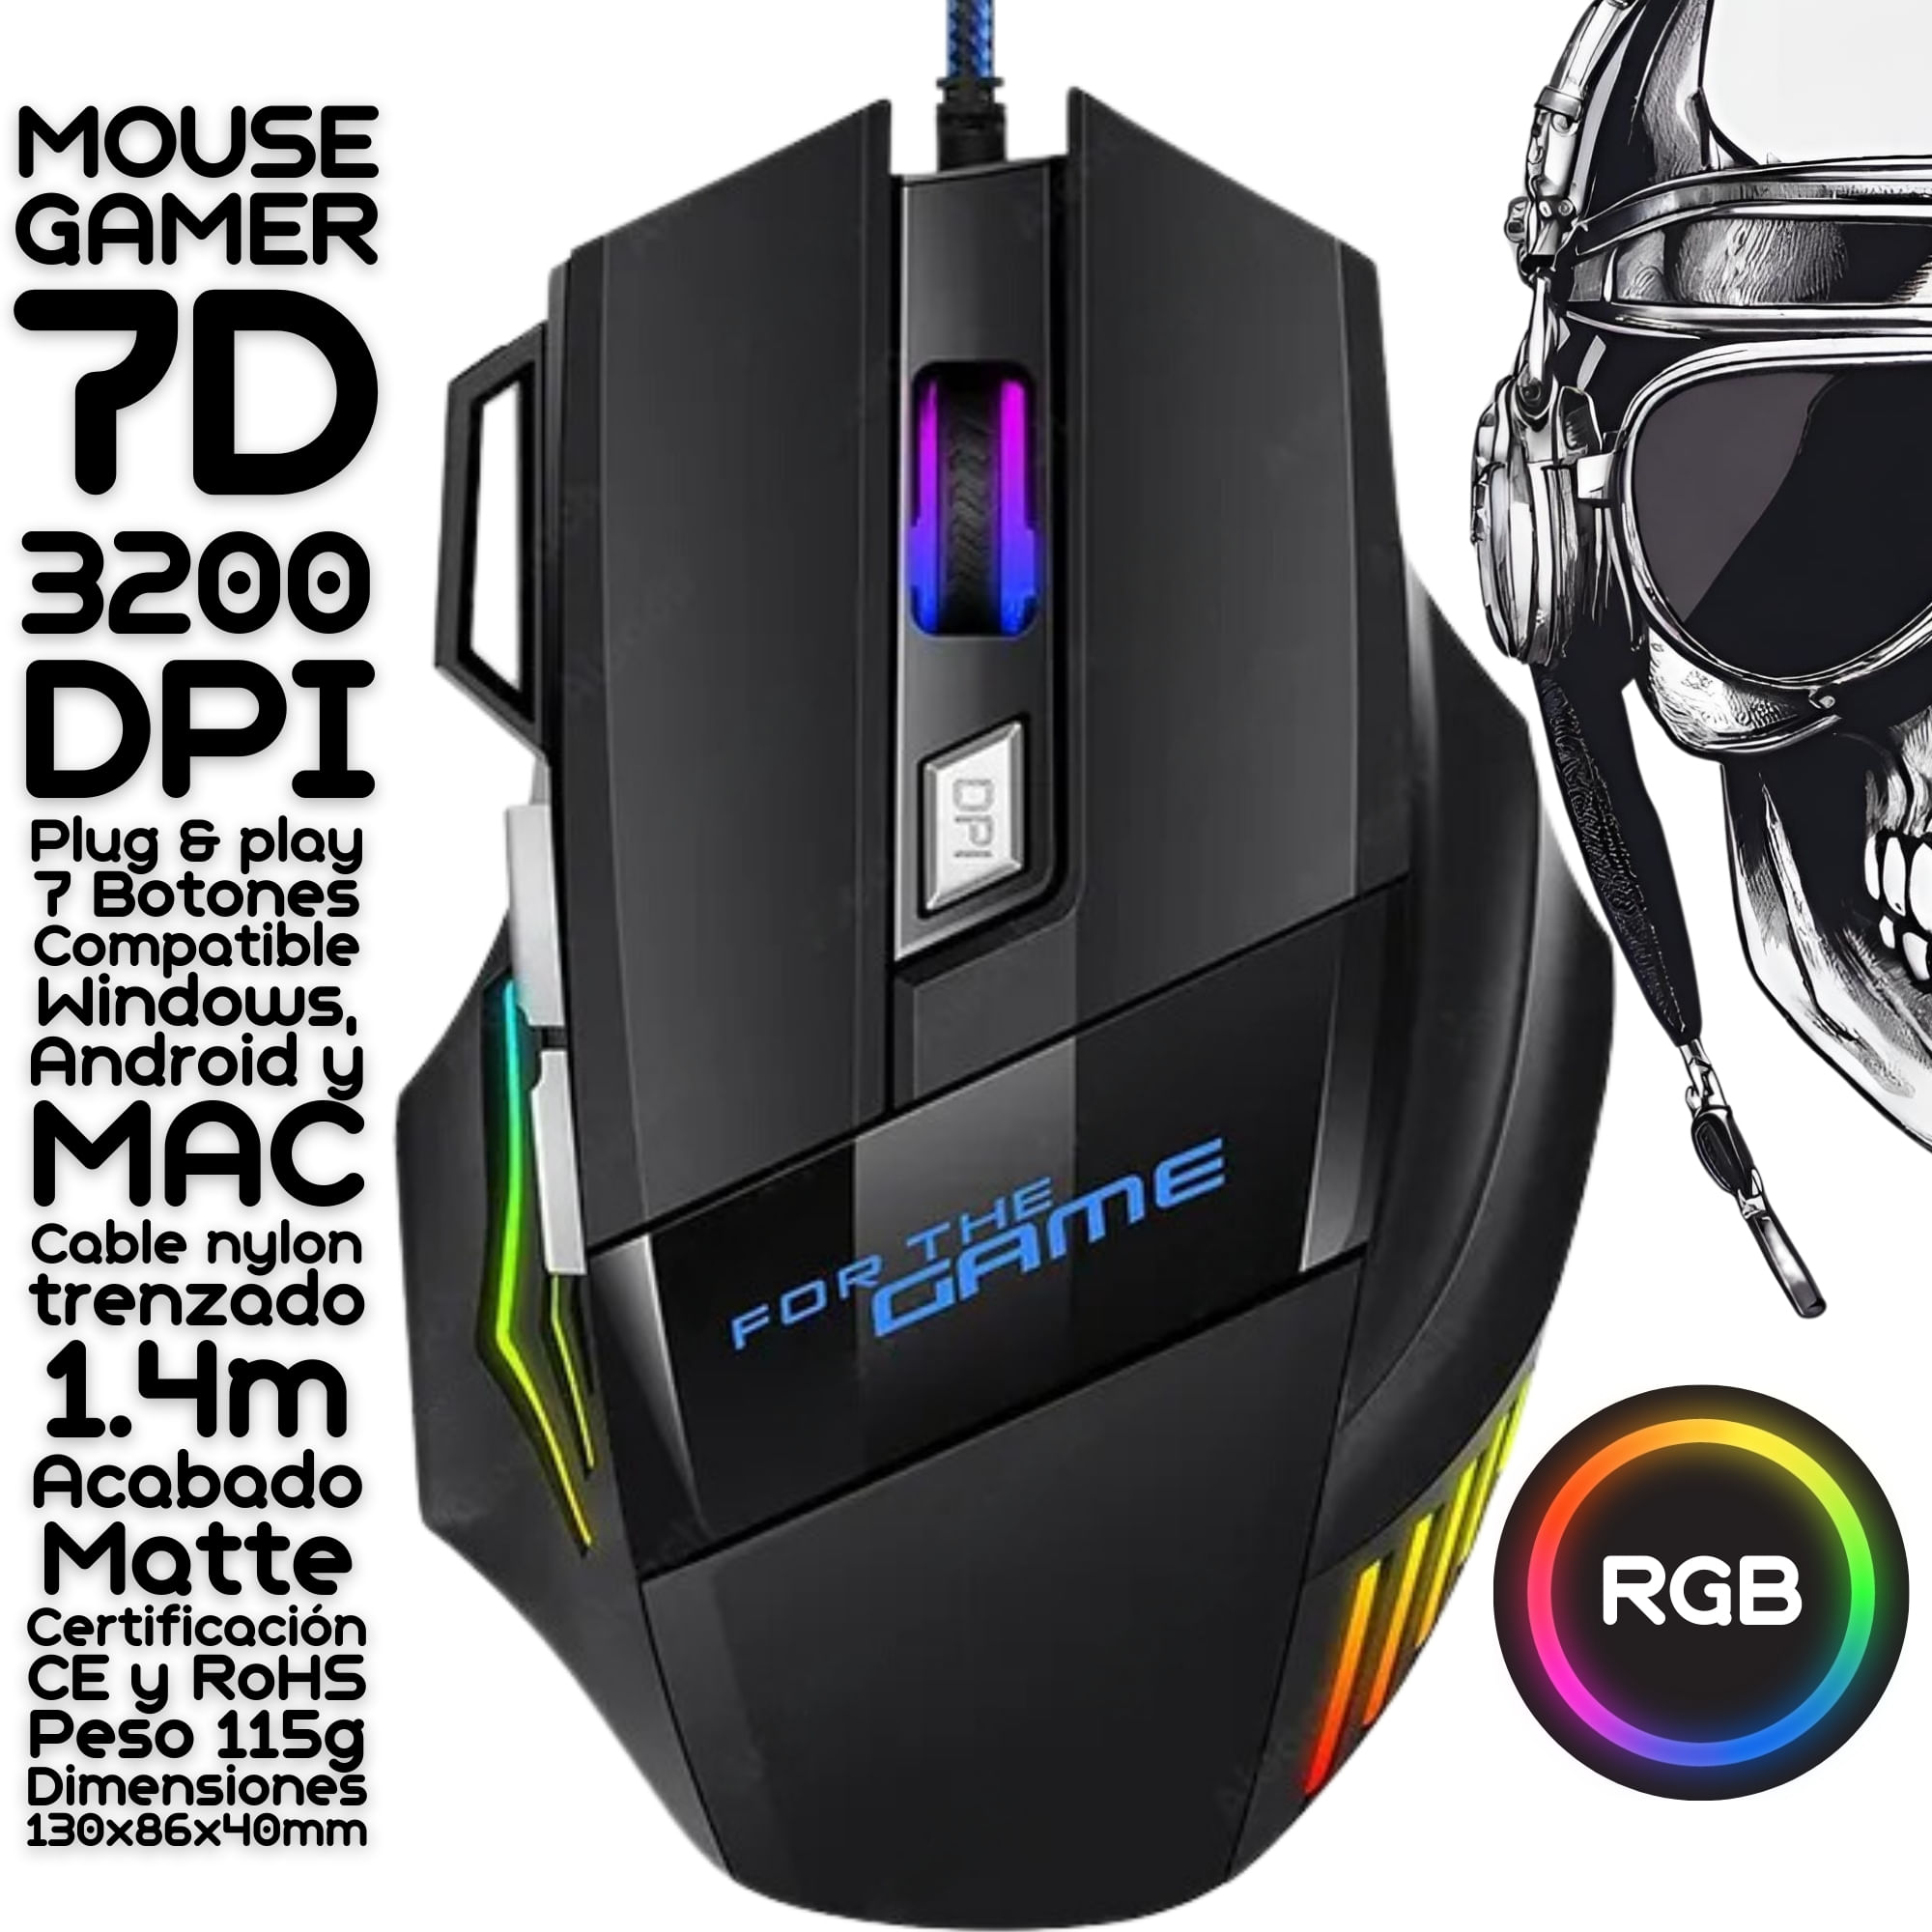 Mouse Gamer 7D 3200 DPI con Iluminación LED RGB